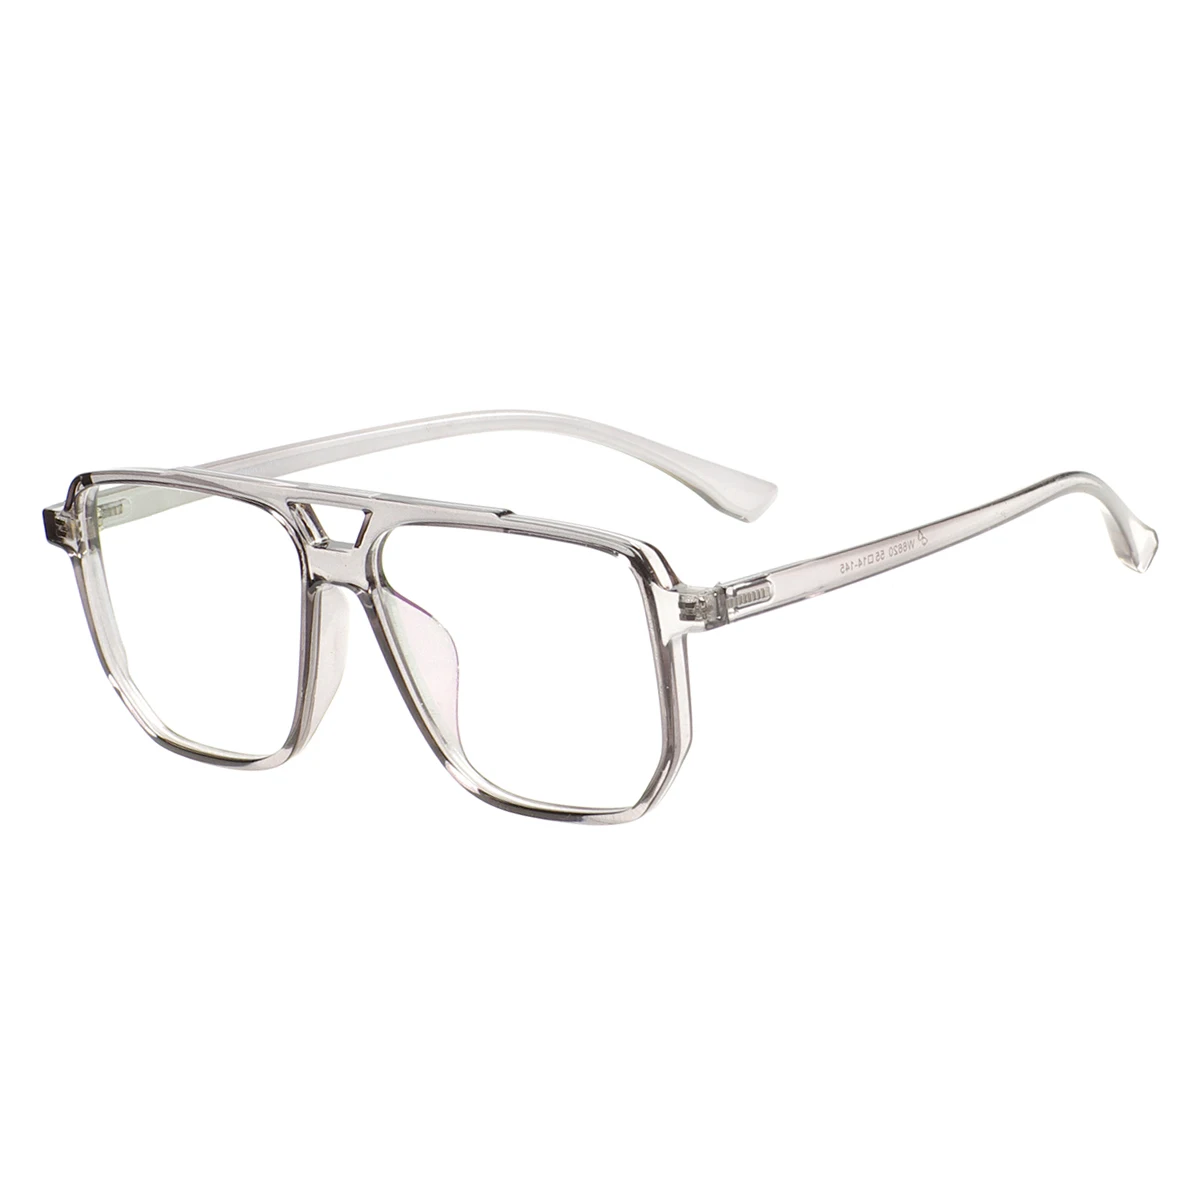 Men and Women Large Oversized Eyeglasses TR90 Lightweight Transparent Full Rim Eyewear Frame For Prescription Optical Lenses